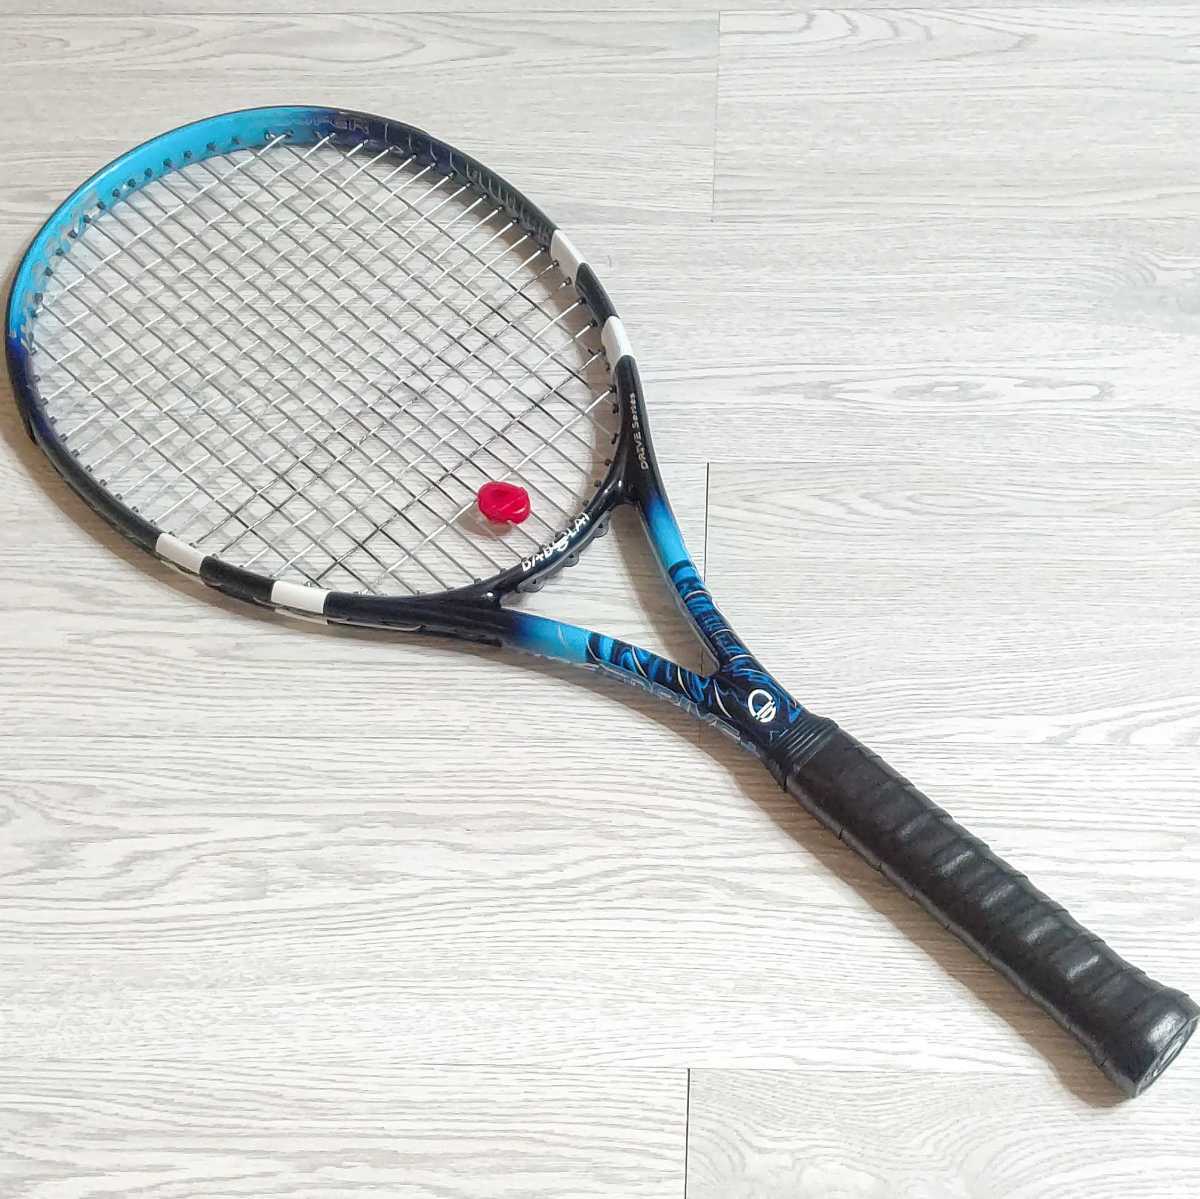 バボラ ピュアドライブ VS Ｇ2 テニス ラケット www.potentehouston.com